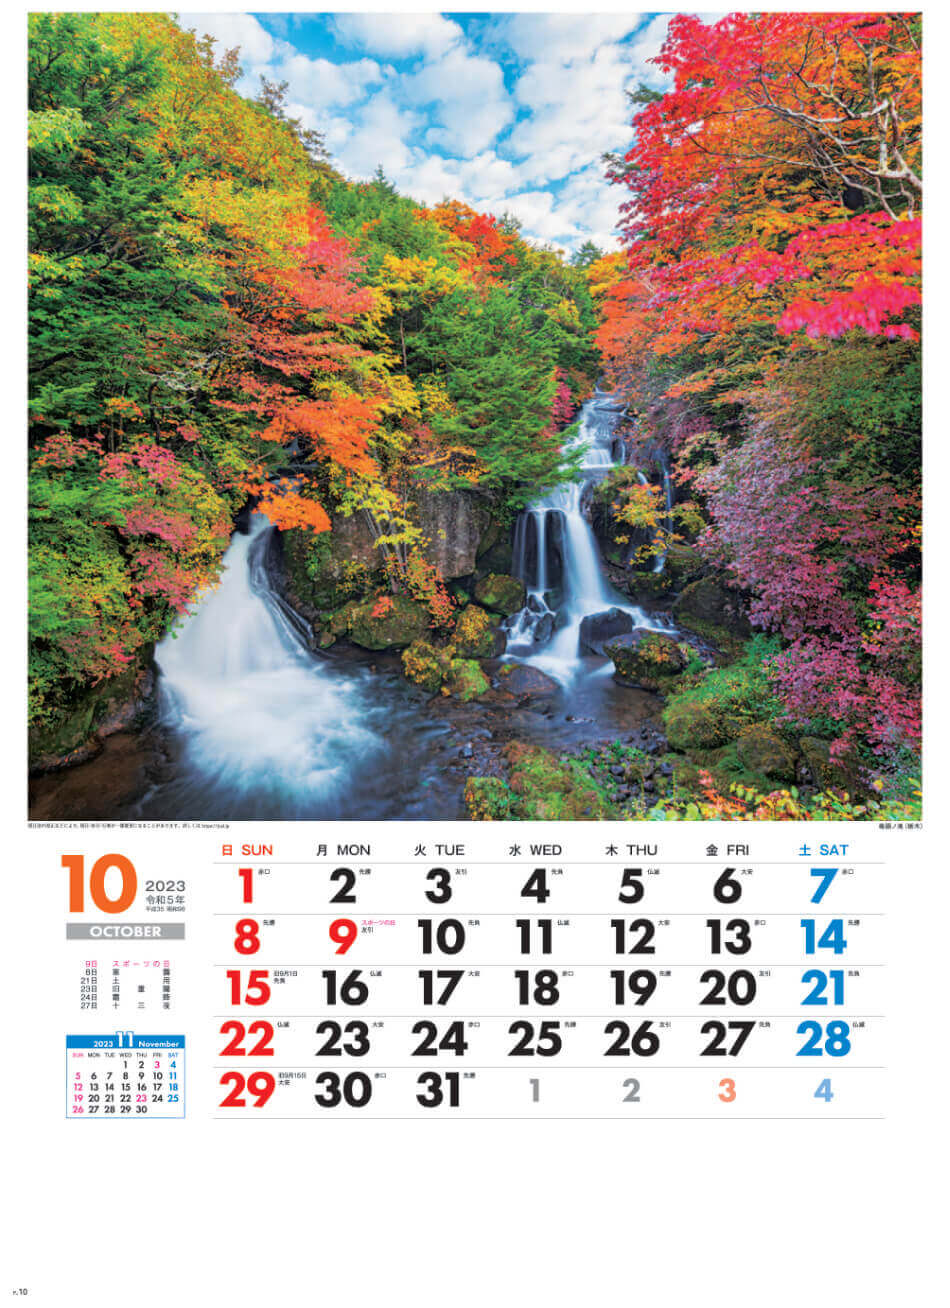 10月 竜頭の滝(栃木) 美しき日本 2023年カレンダーの画像